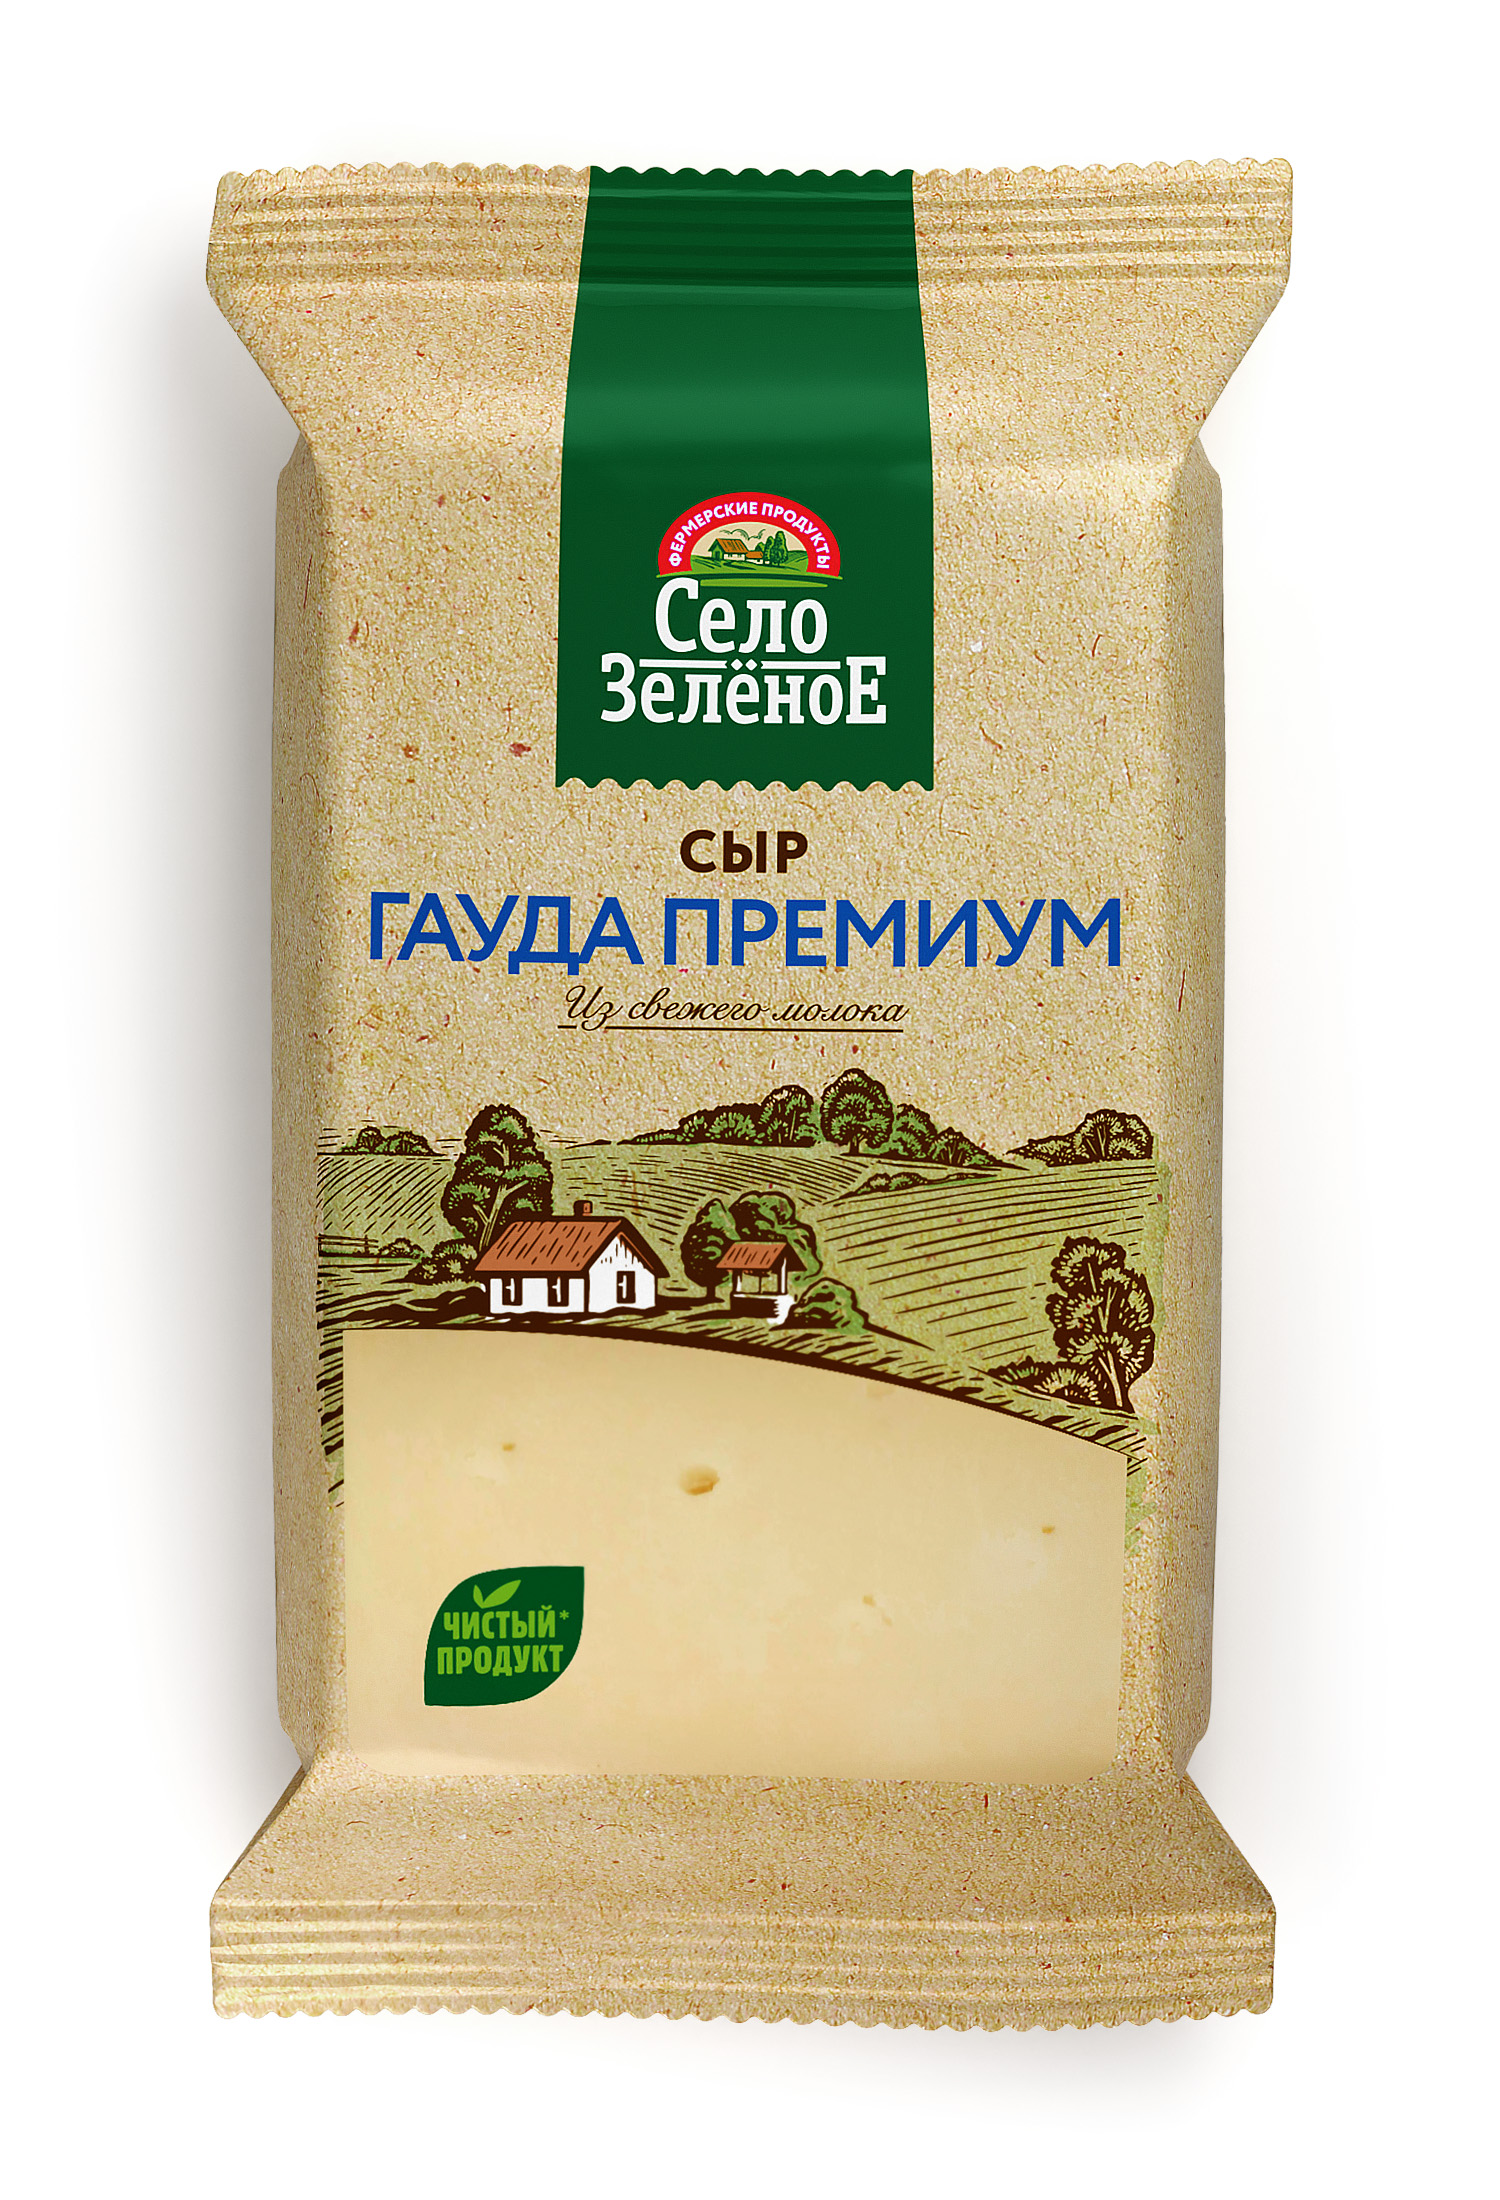 Сыр твёрдый Село Зелёное гауда премиум, 40%, 200 г